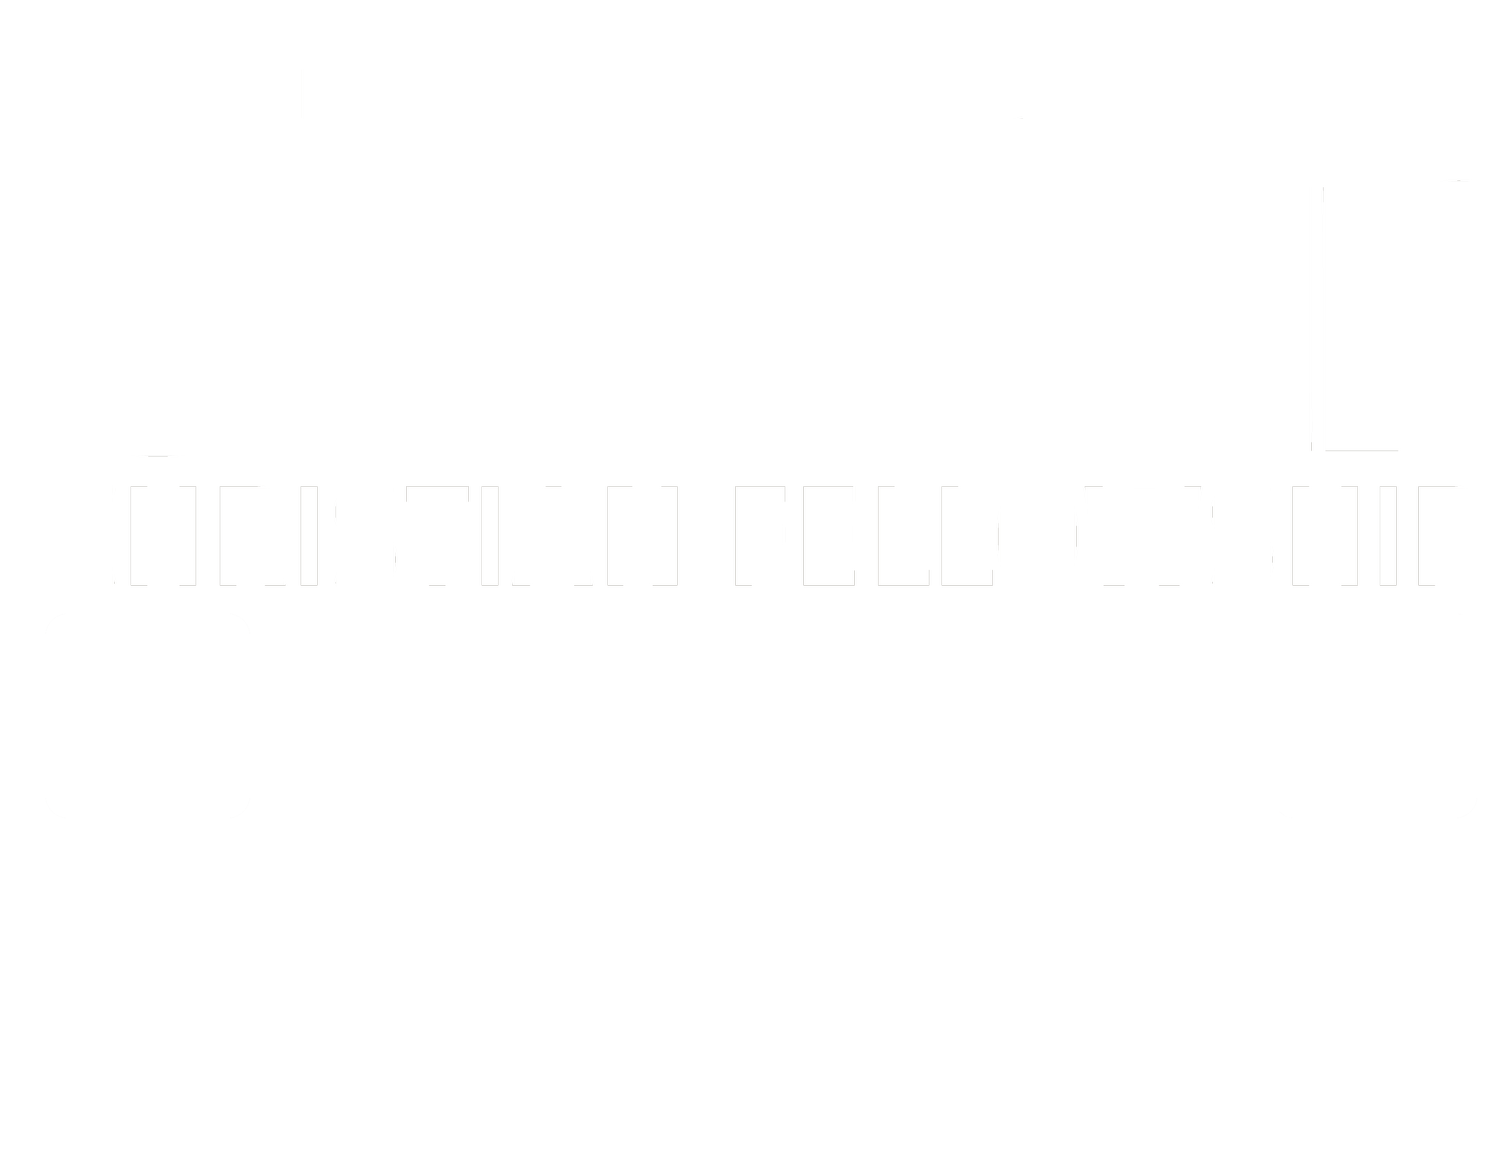 Decatur Christian Fellowship